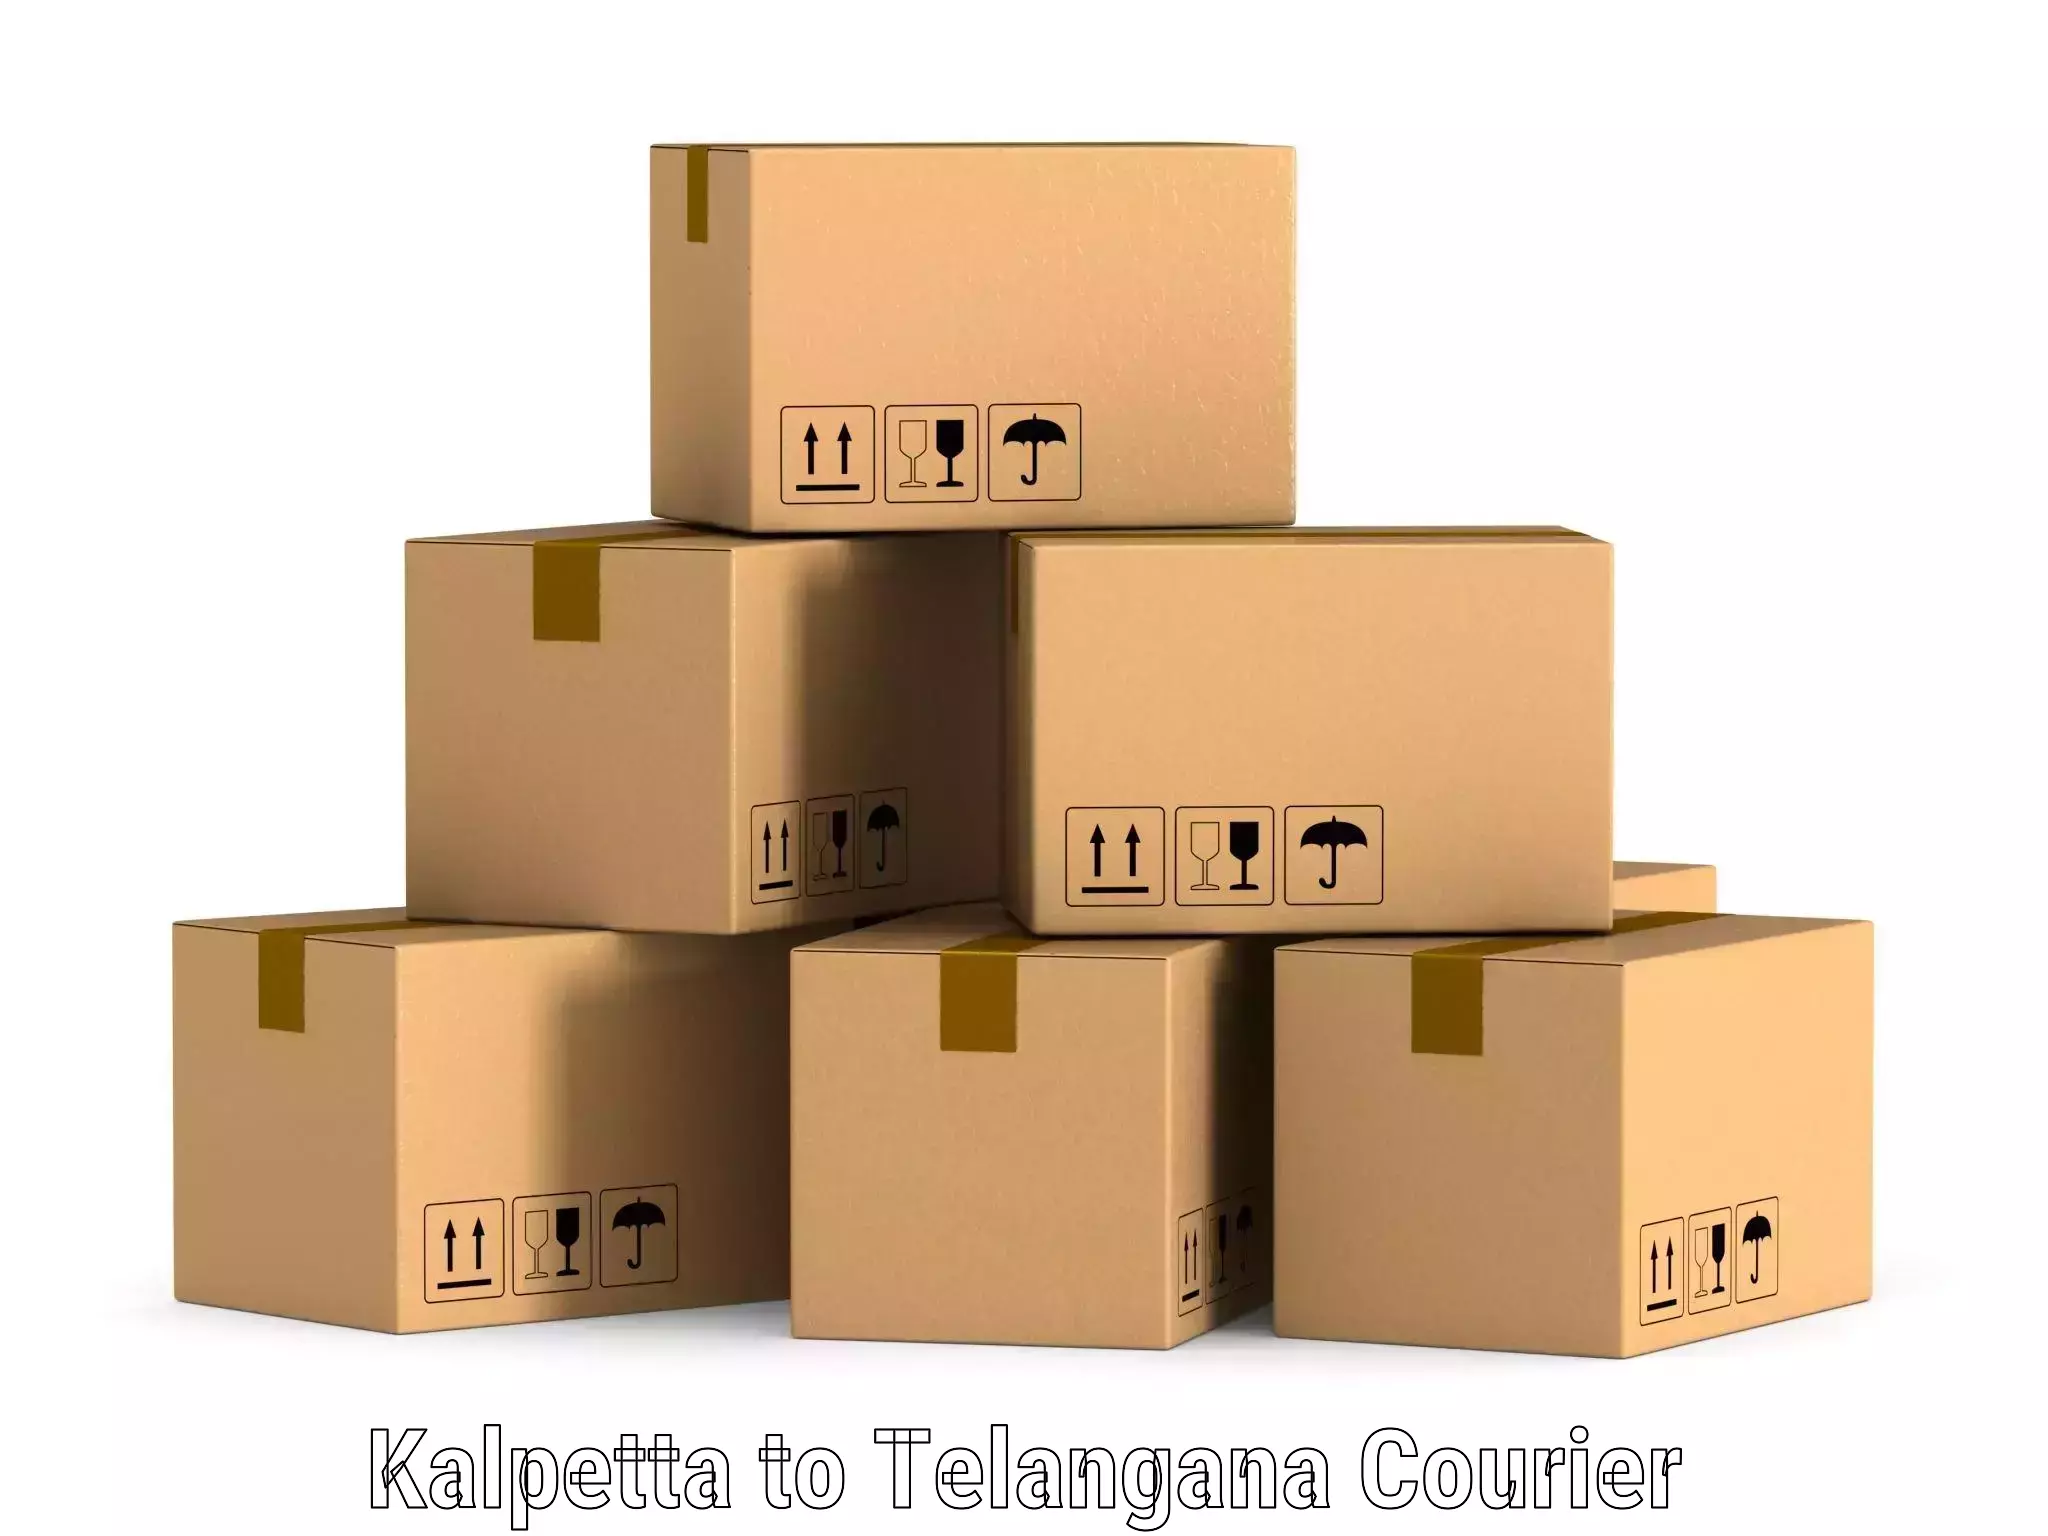 Customer-centric shipping Kalpetta to Madhira